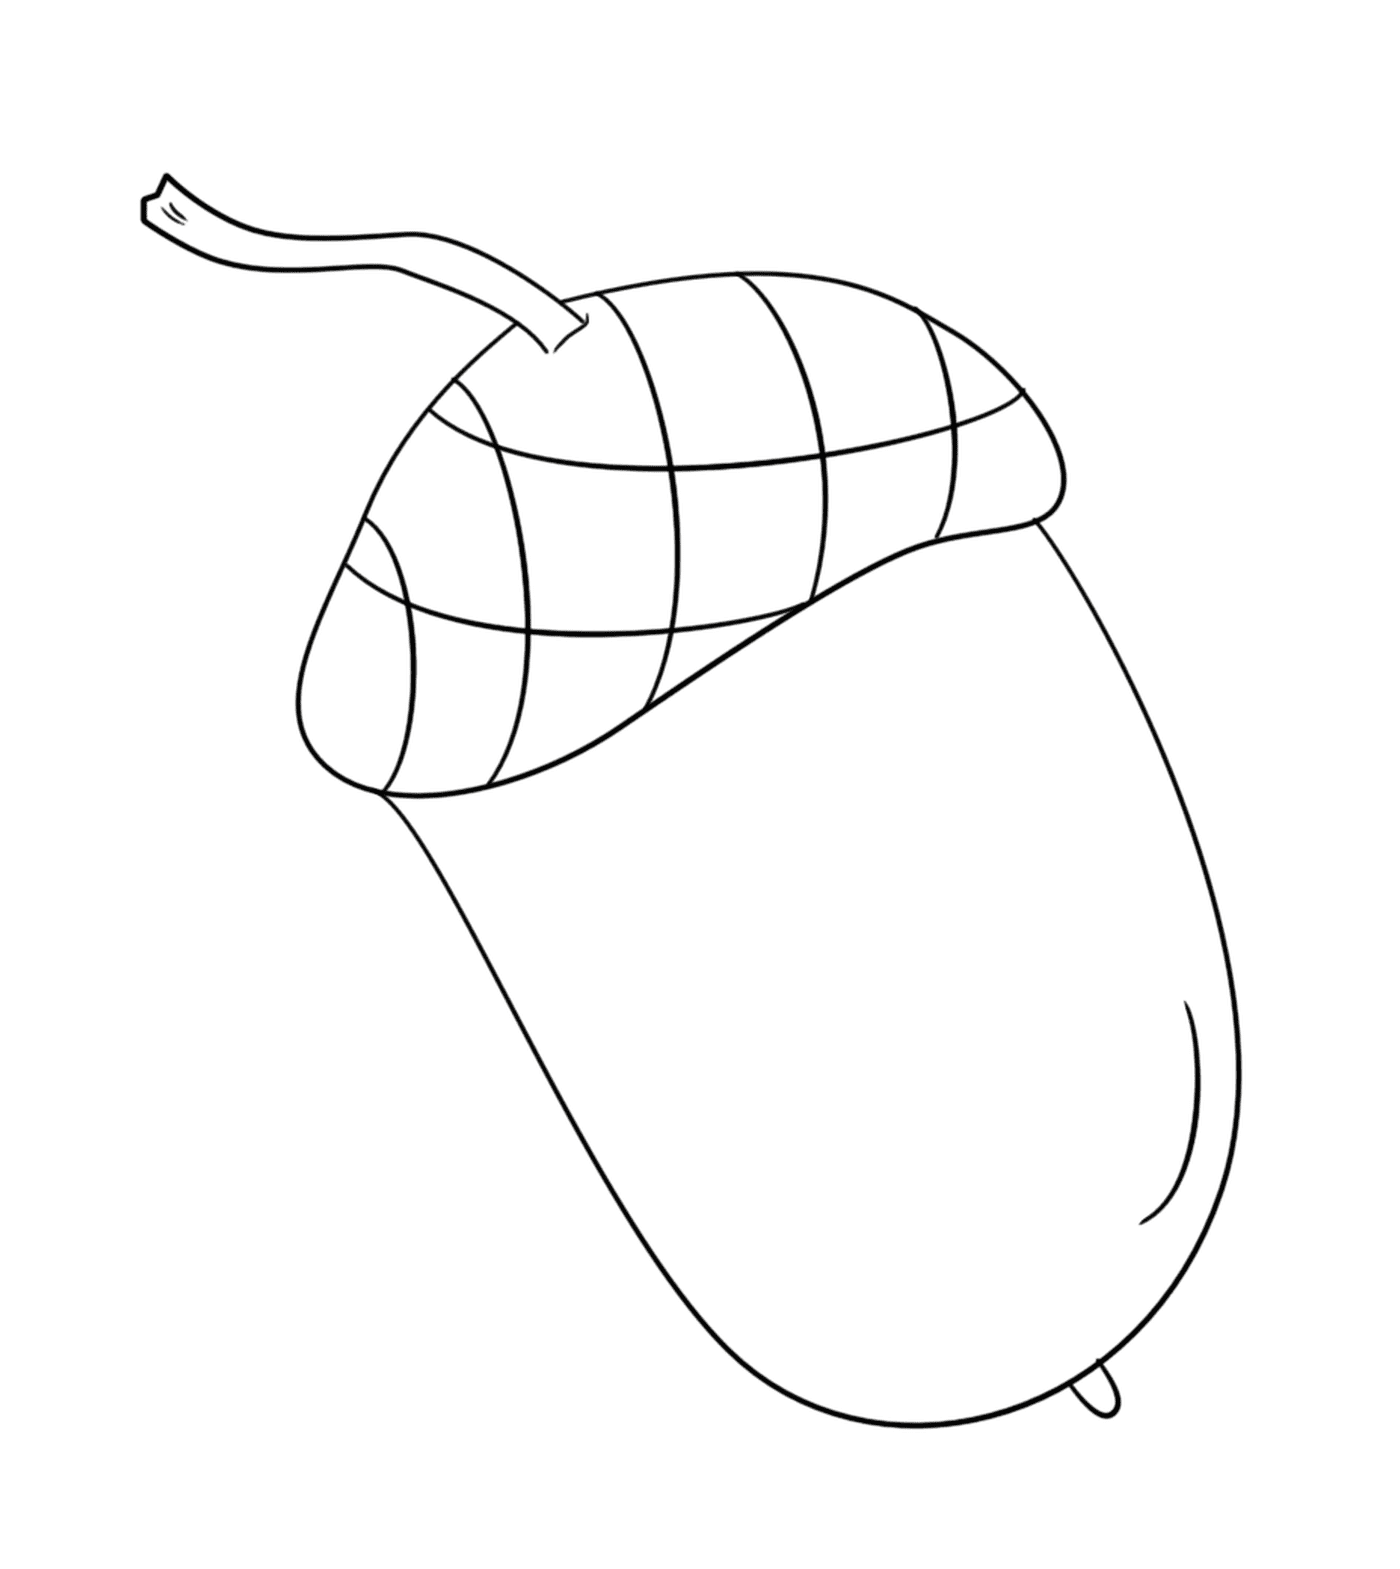  Un glande sobre un fondo blanco 